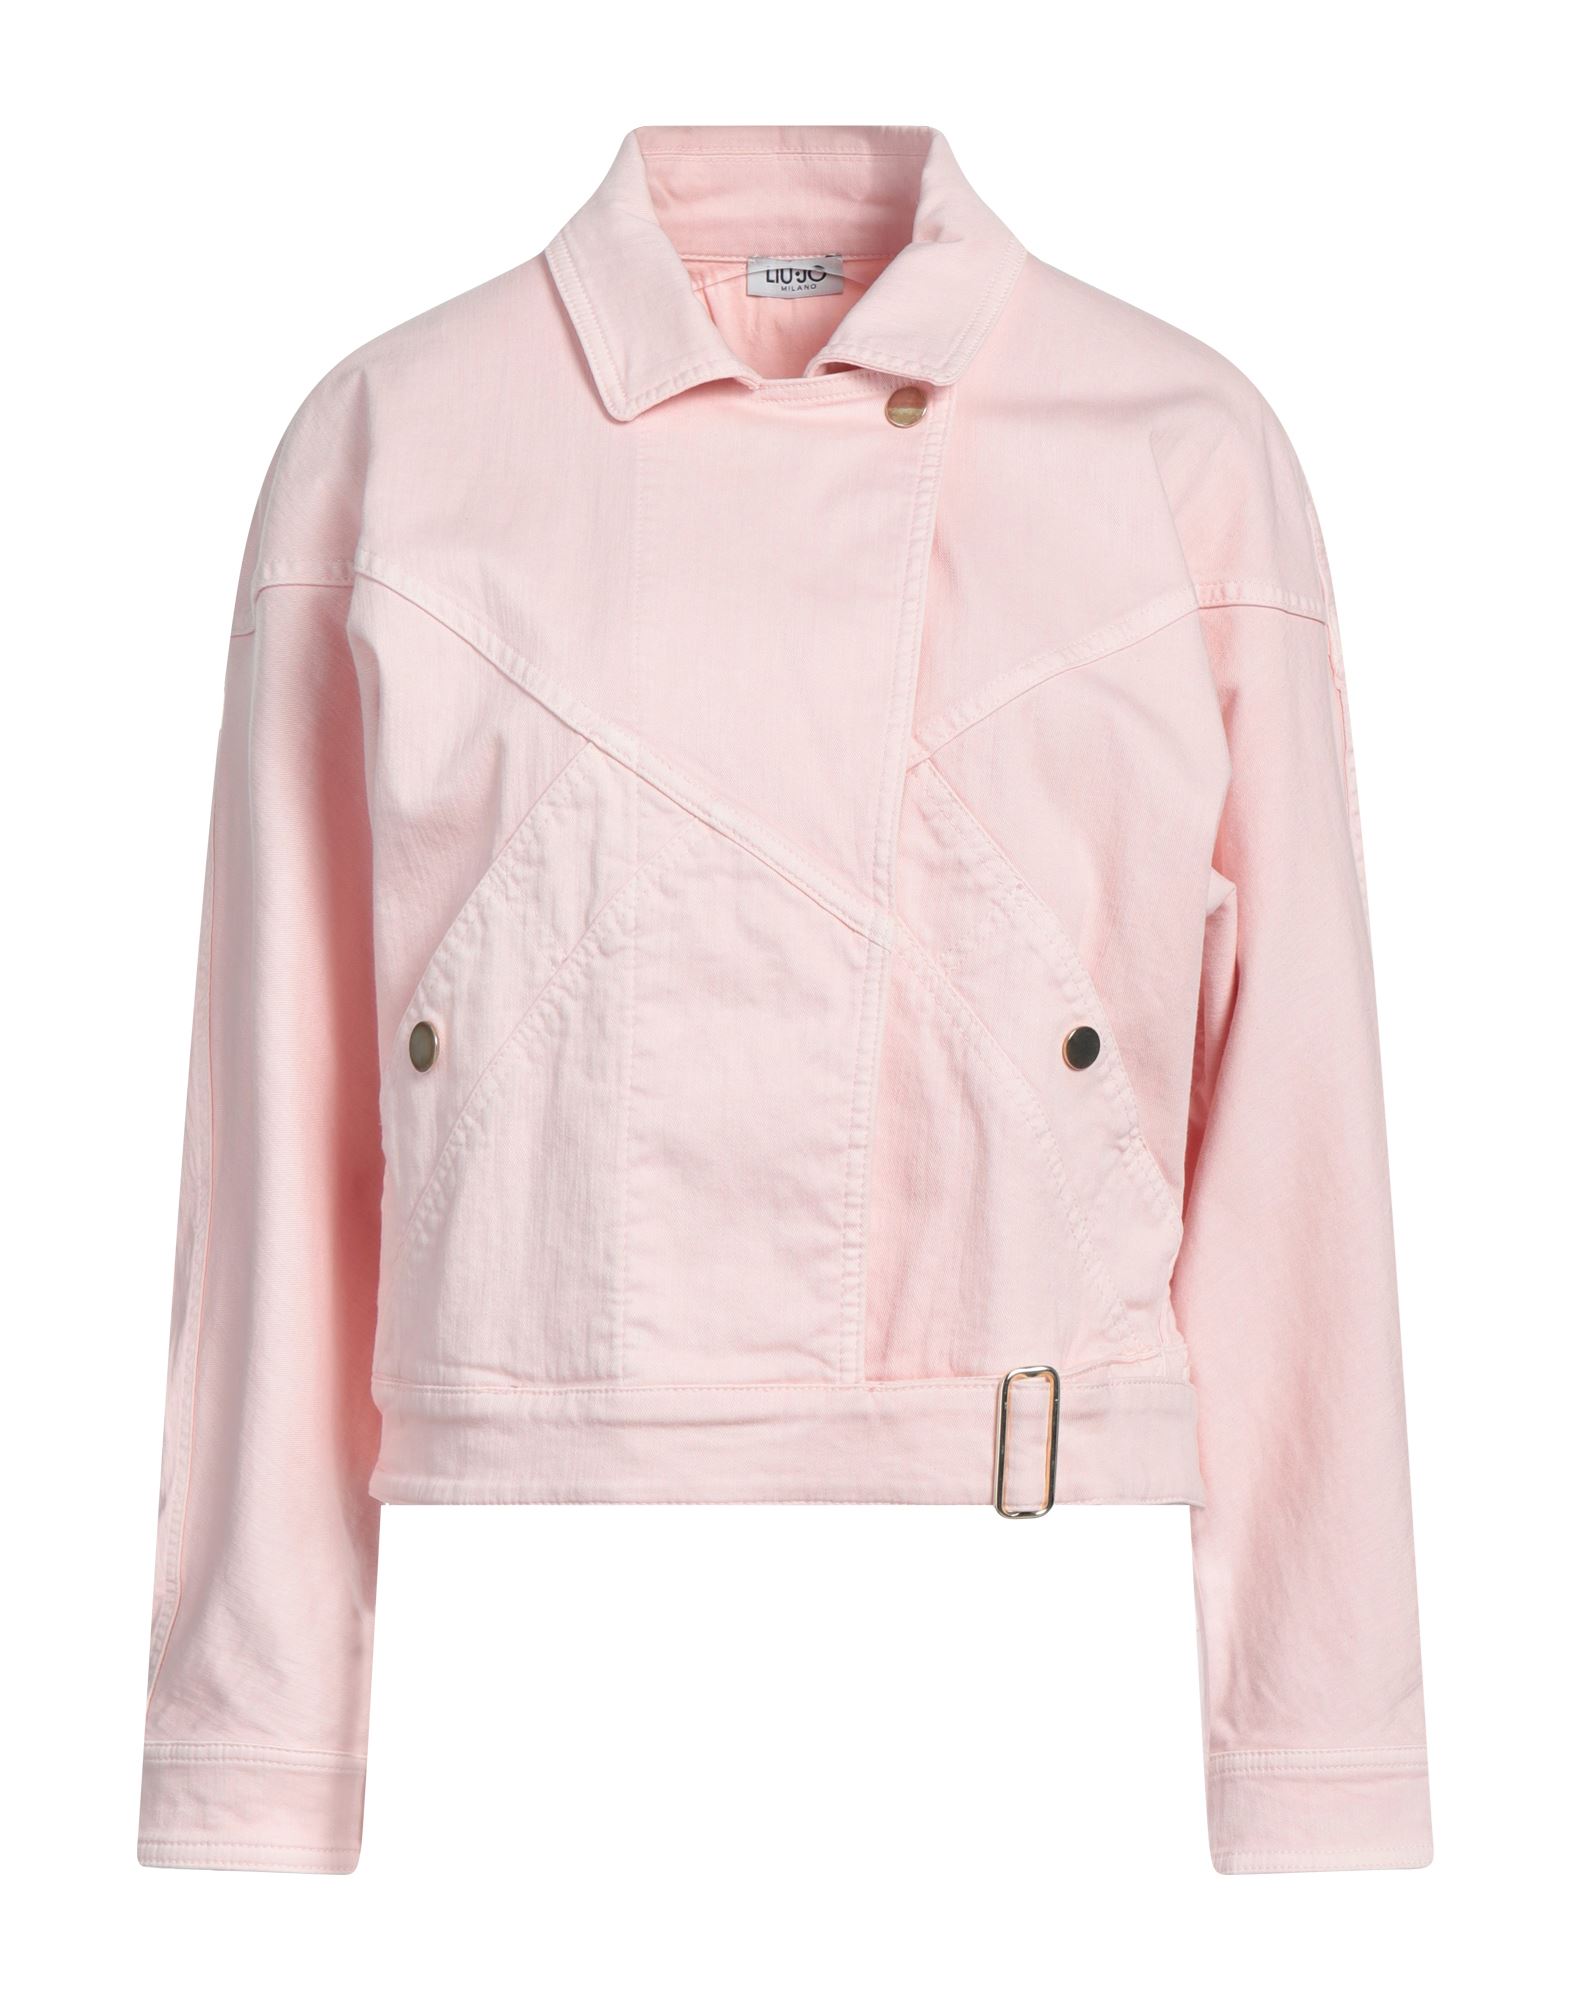 Liu •jo Denim Outerwear In Pink